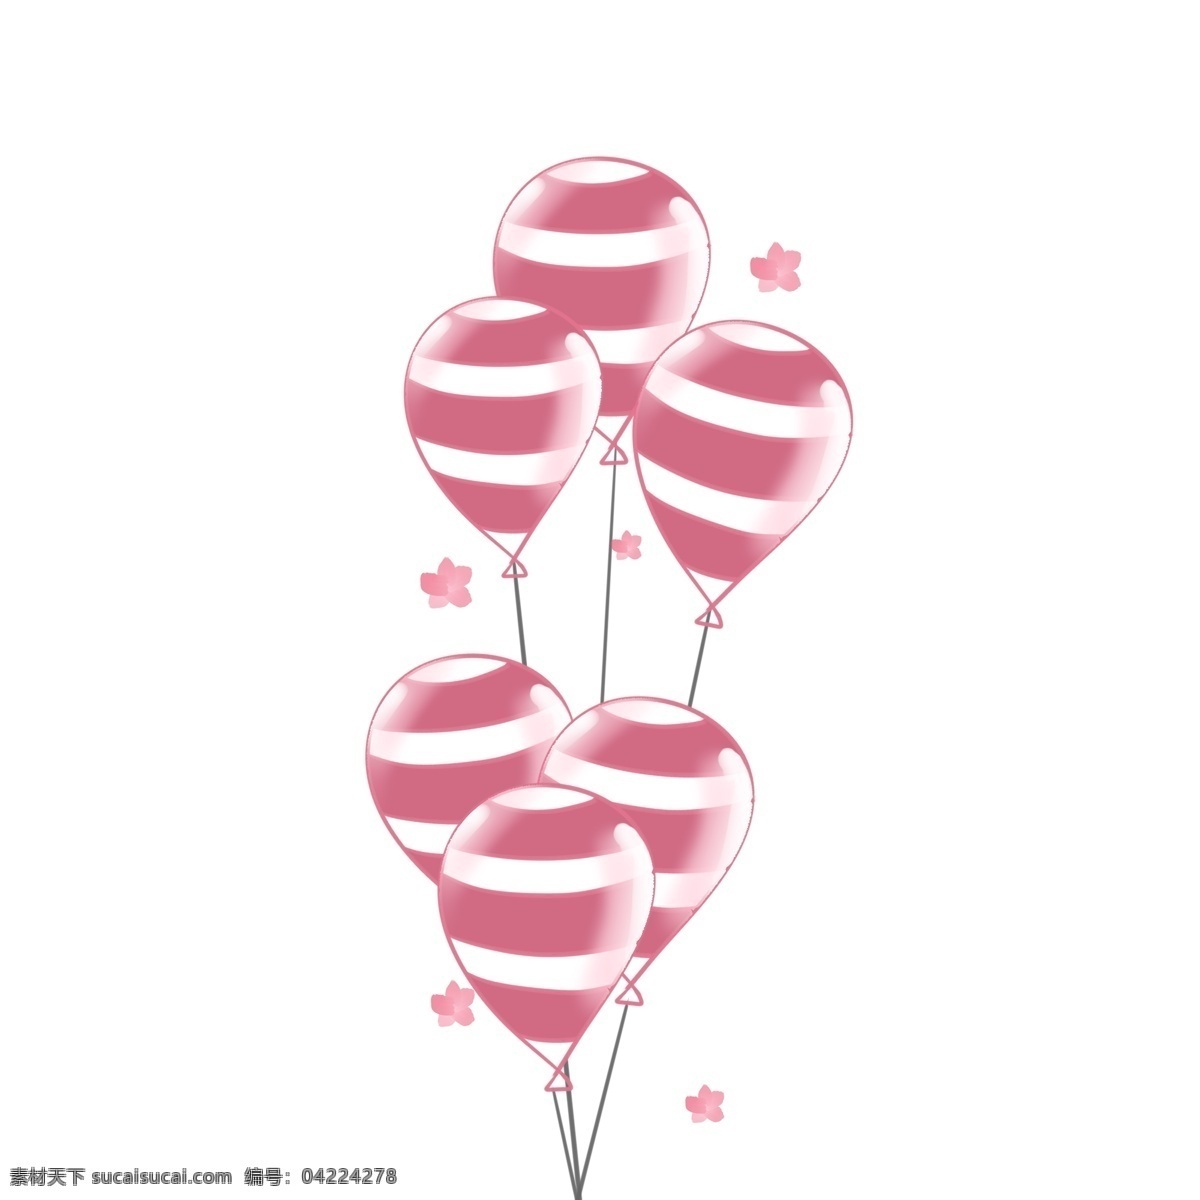 手绘 节日 装饰 气球 插画 手绘气球束 一束彩色气球 节日装饰气球 庆典气球 卡通气球 喜庆气球 彩环气球 卡通气球插画